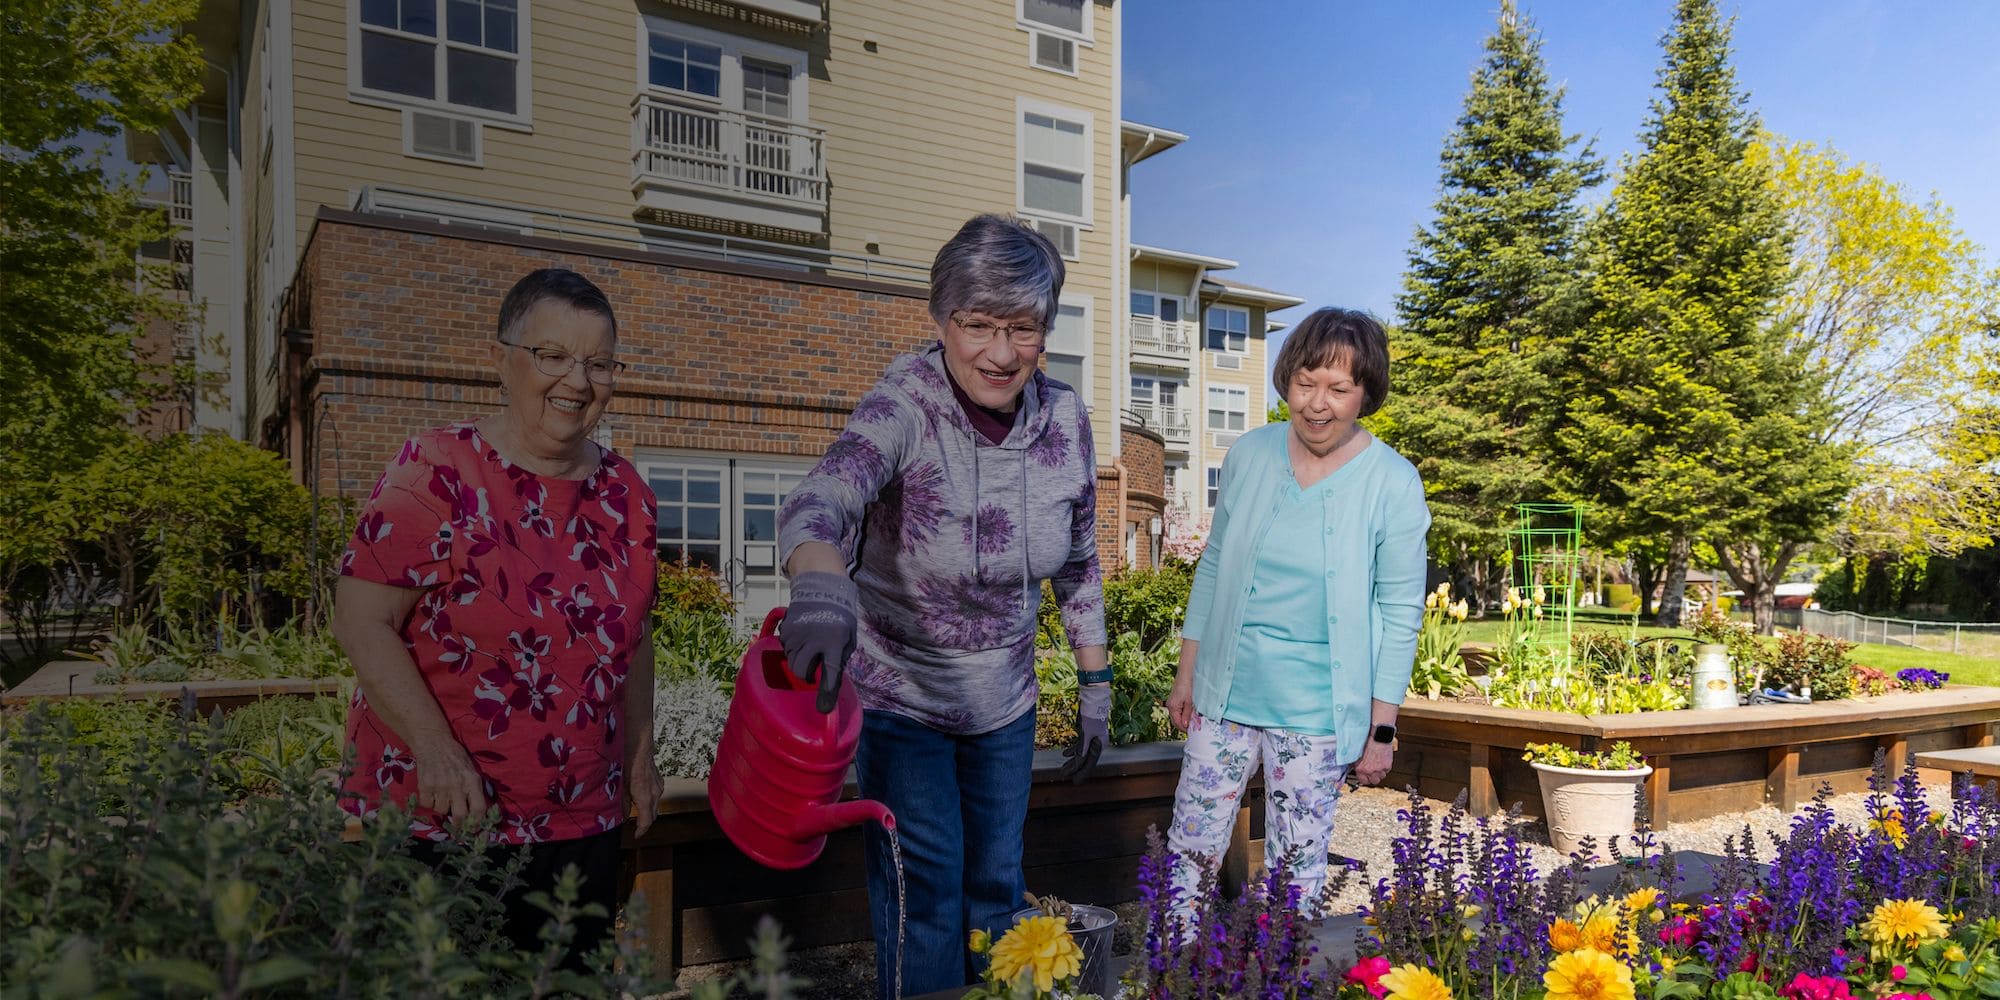 Three women tending a garden